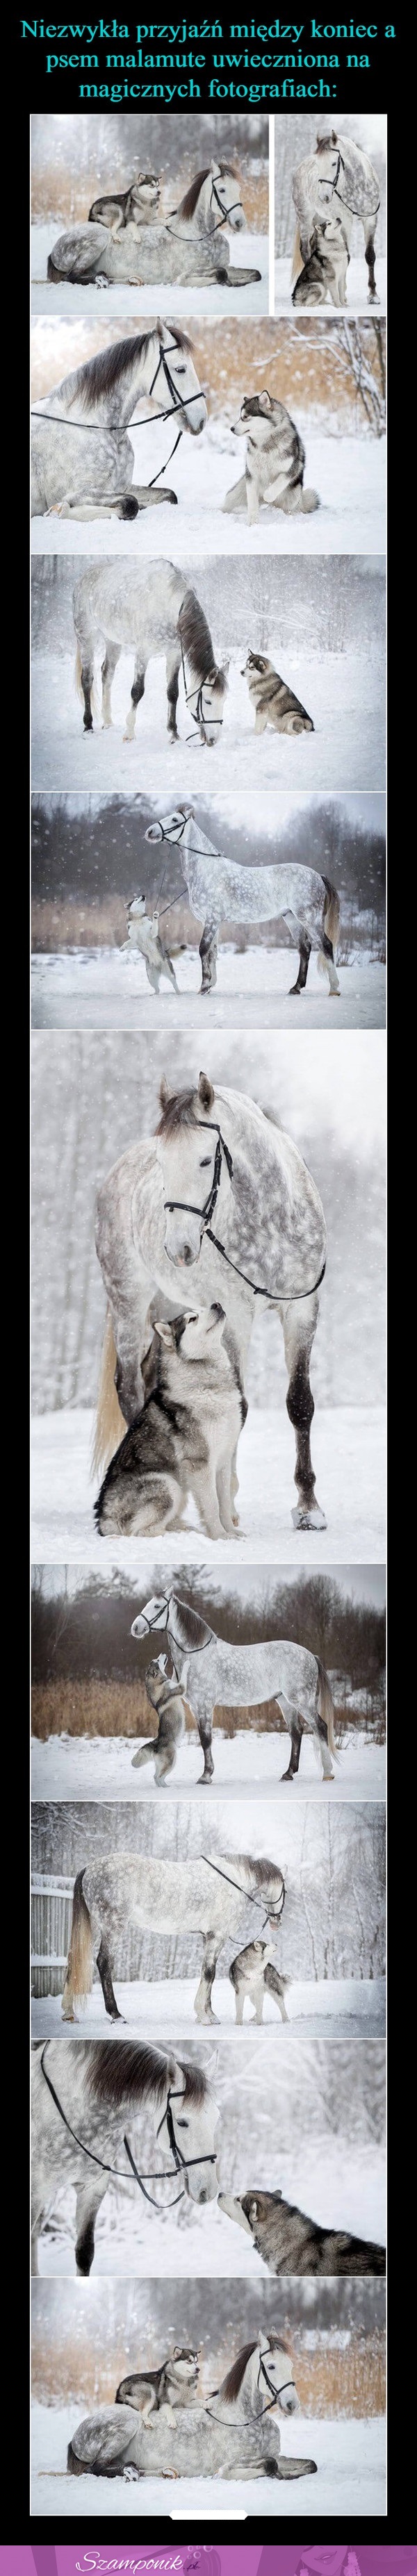 Niezwykła przyjaźń między koniem a psem. Magiczne fotografie!